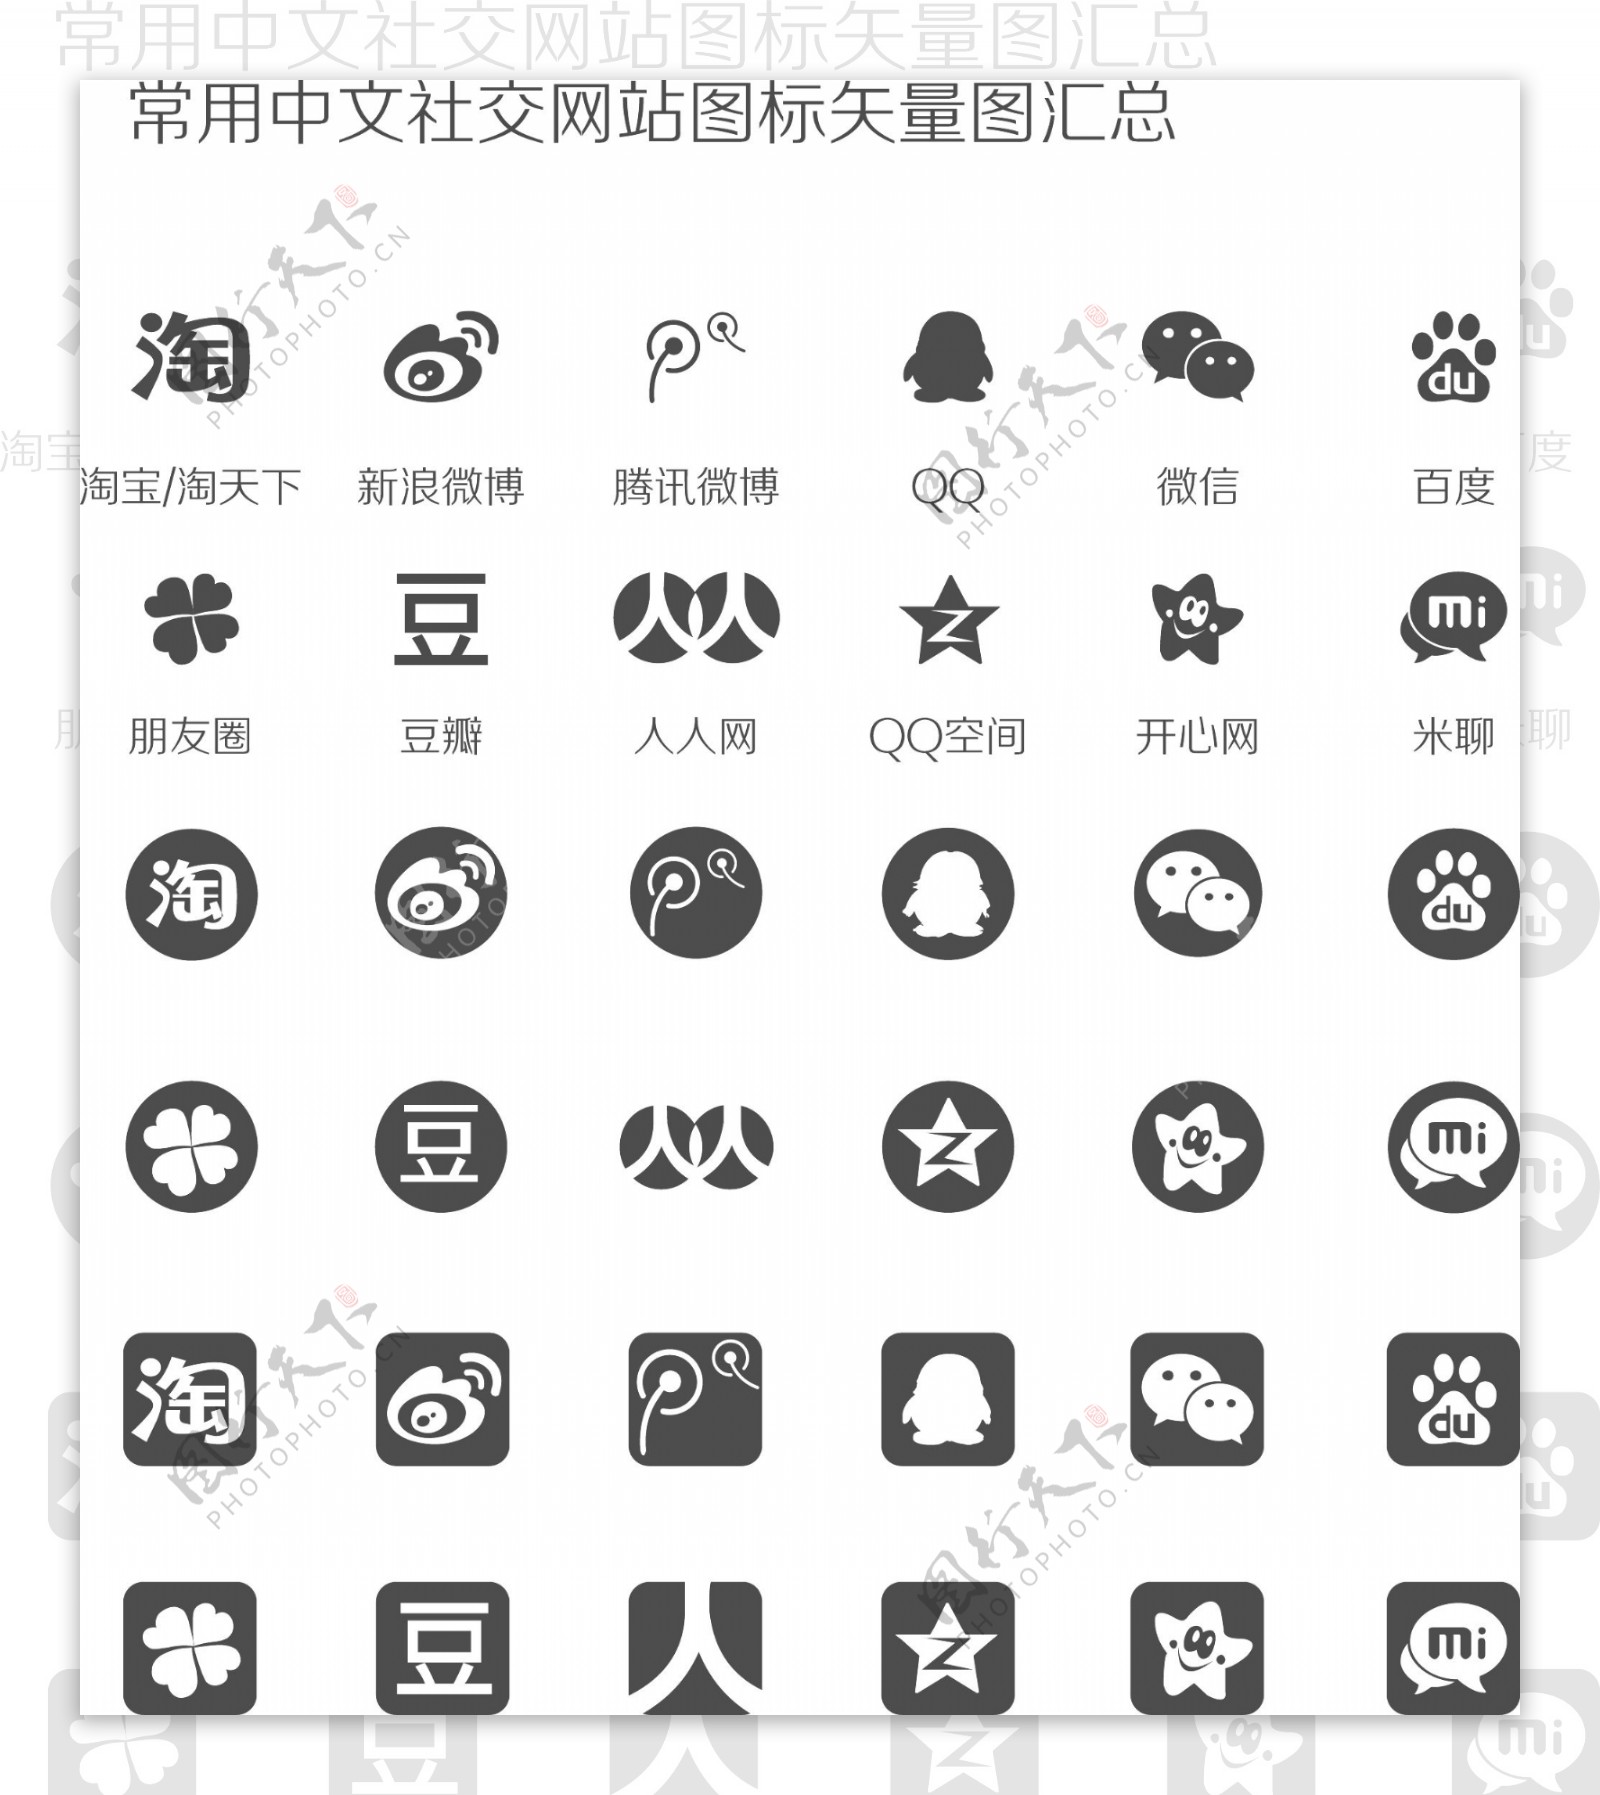 常用中文社交网络图标